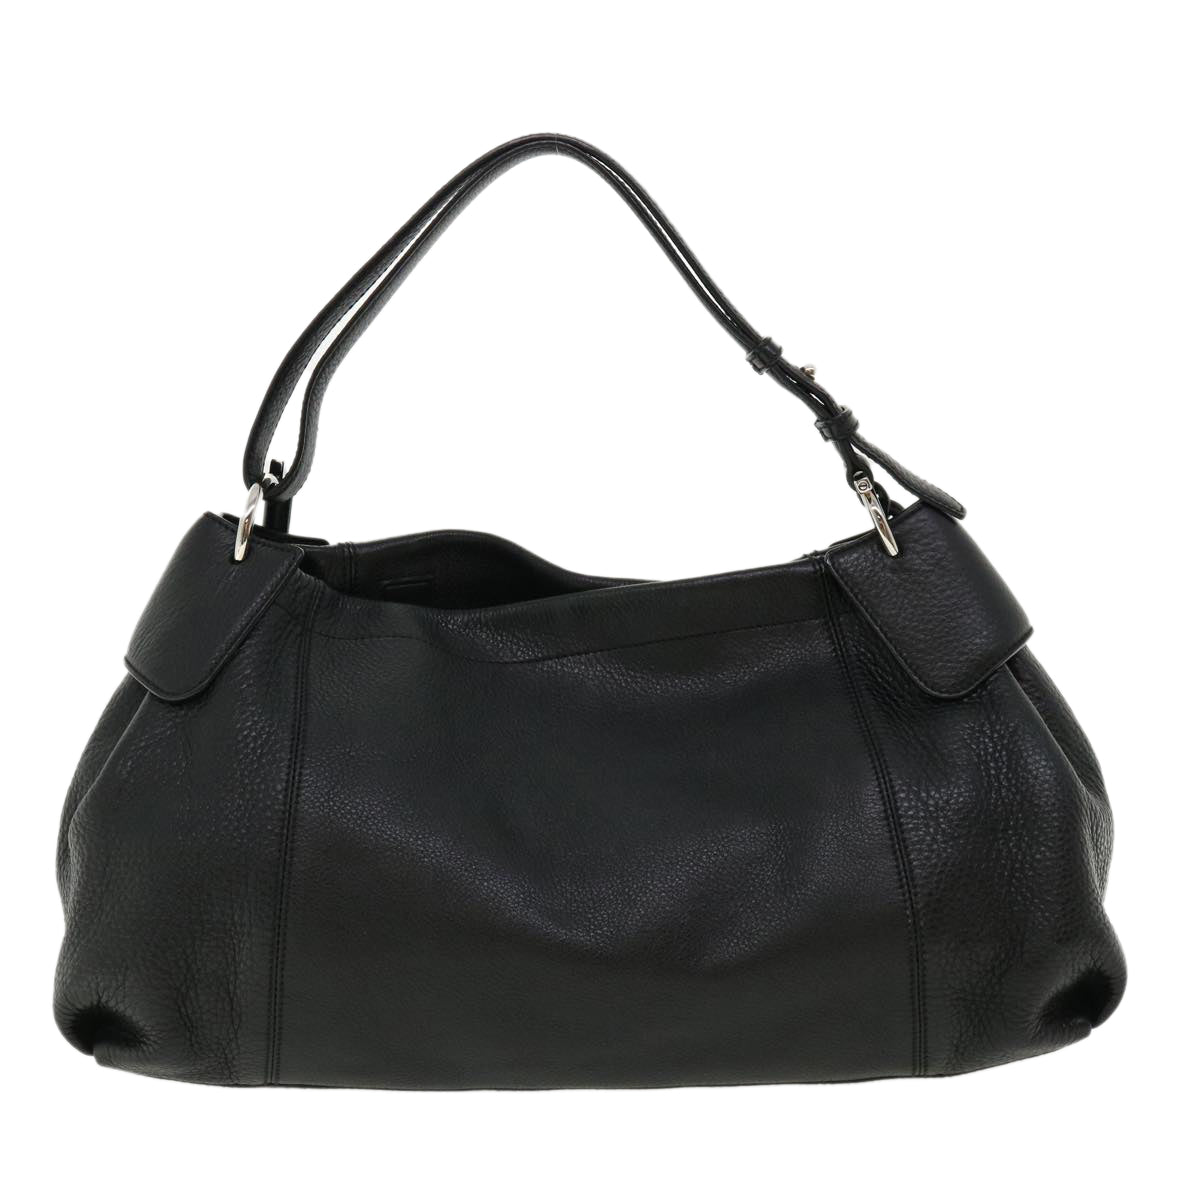 Salvatore Ferragamo Hand Bag Leather Black Auth 33126 - 0